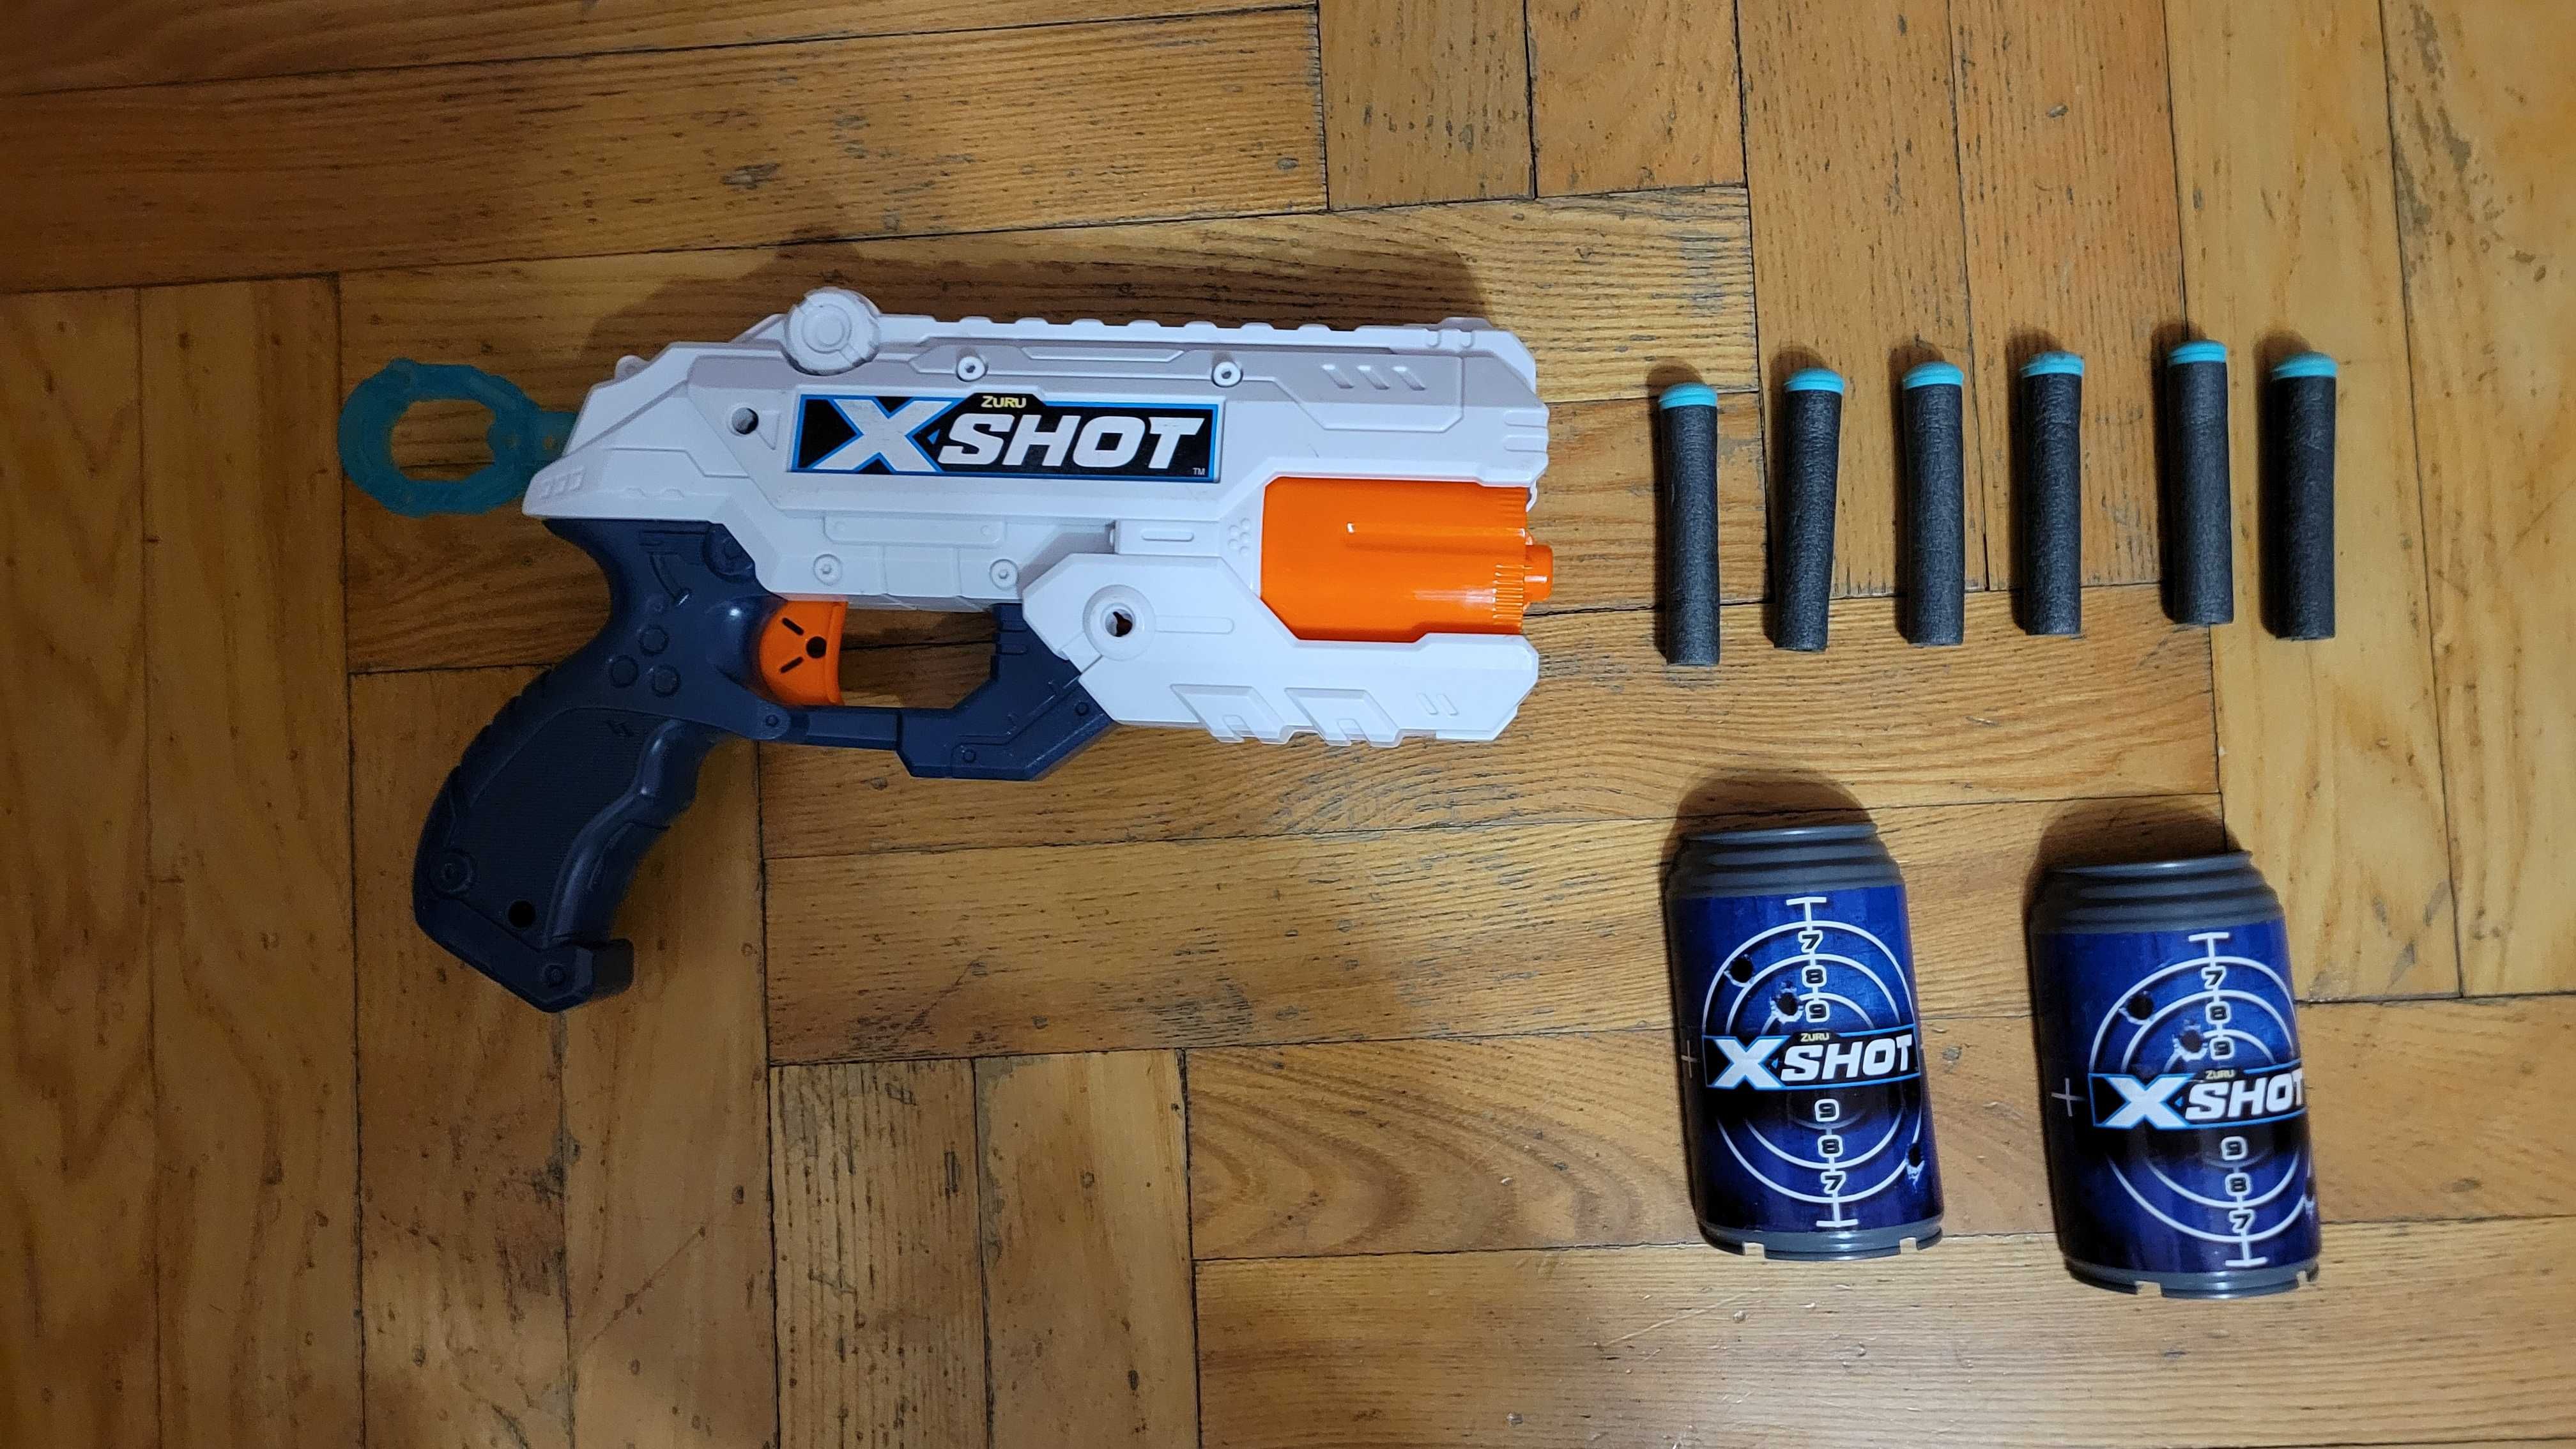 Бластер X-shot Exel reflex 6